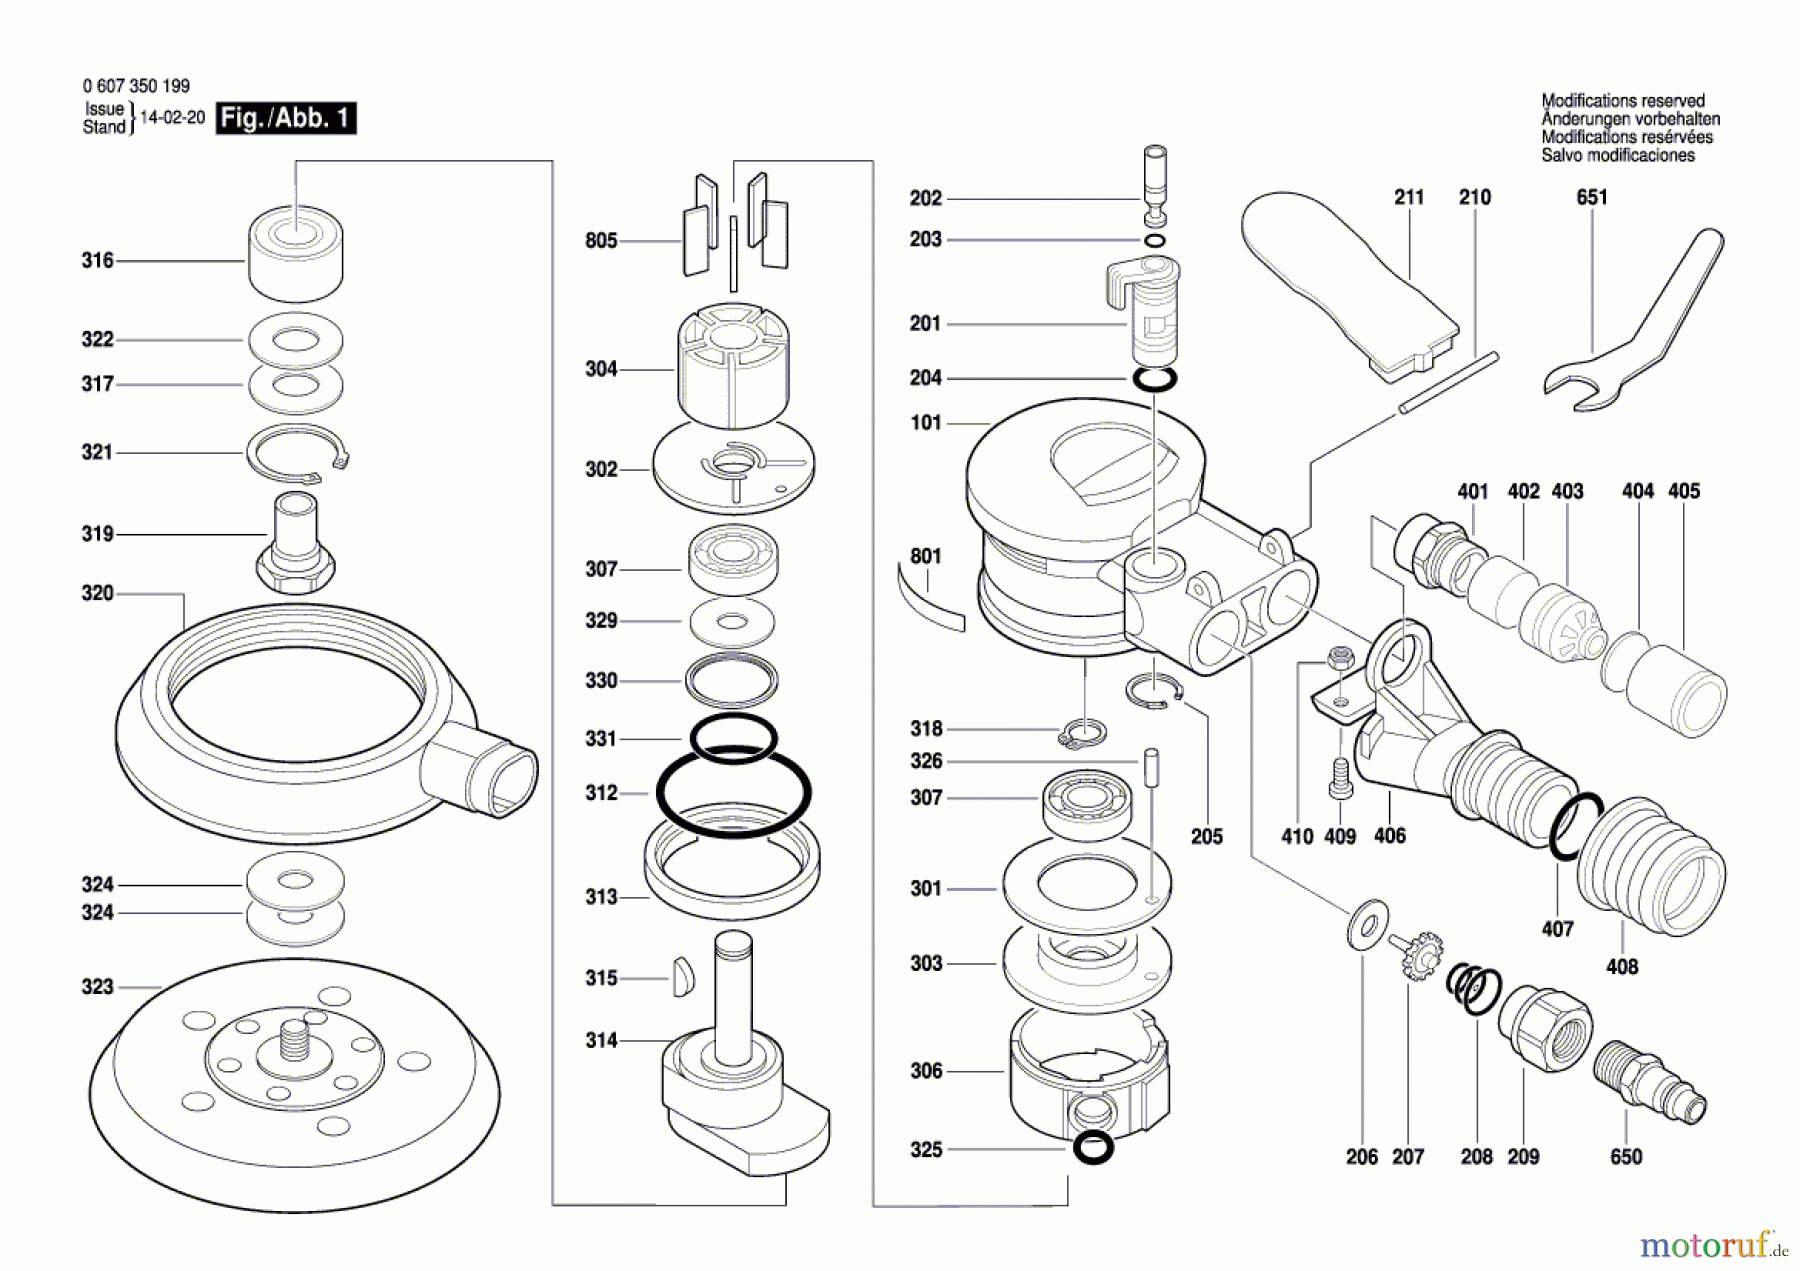  Bosch Werkzeug Exzenterschleifer DEX 150-5 Seite 1